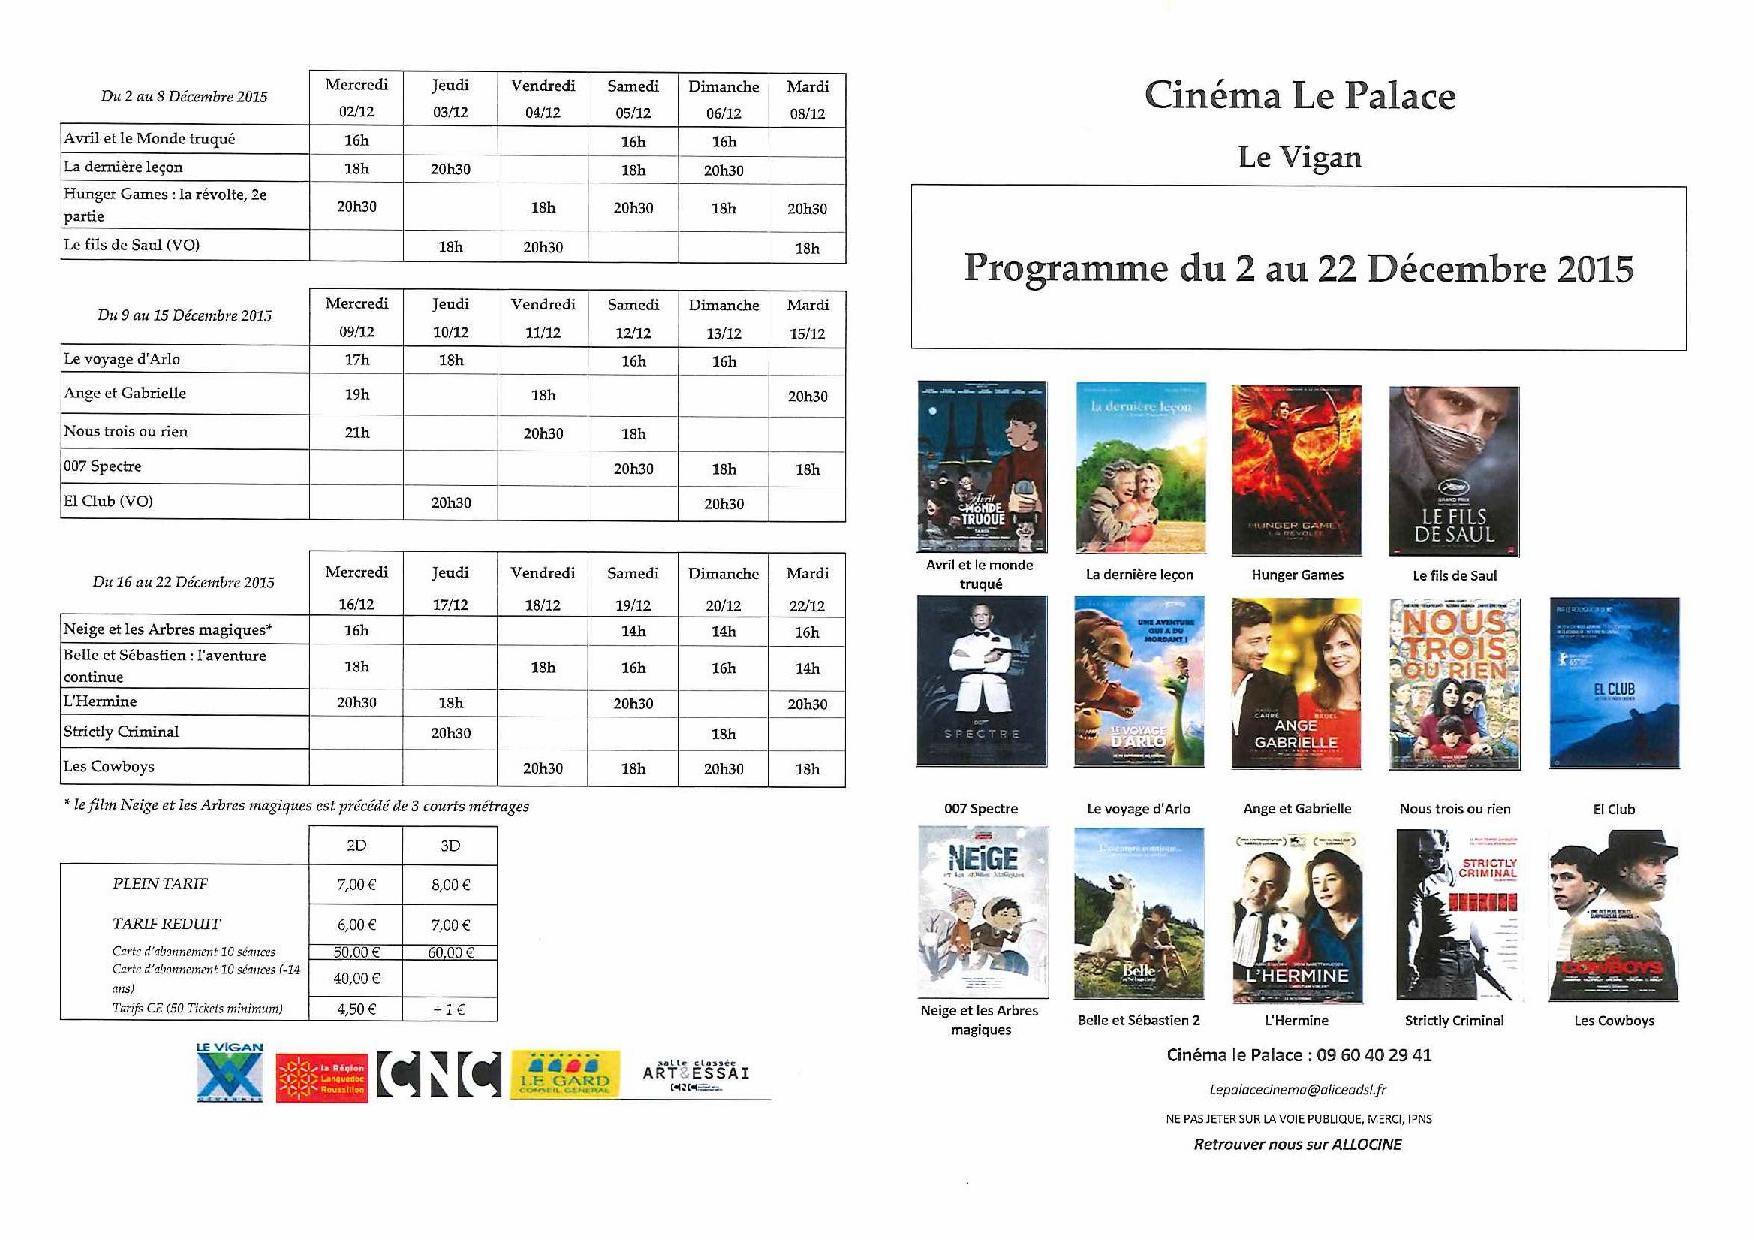 Programme du Cinéma le Palace du 2 au 22 Décembre 2015